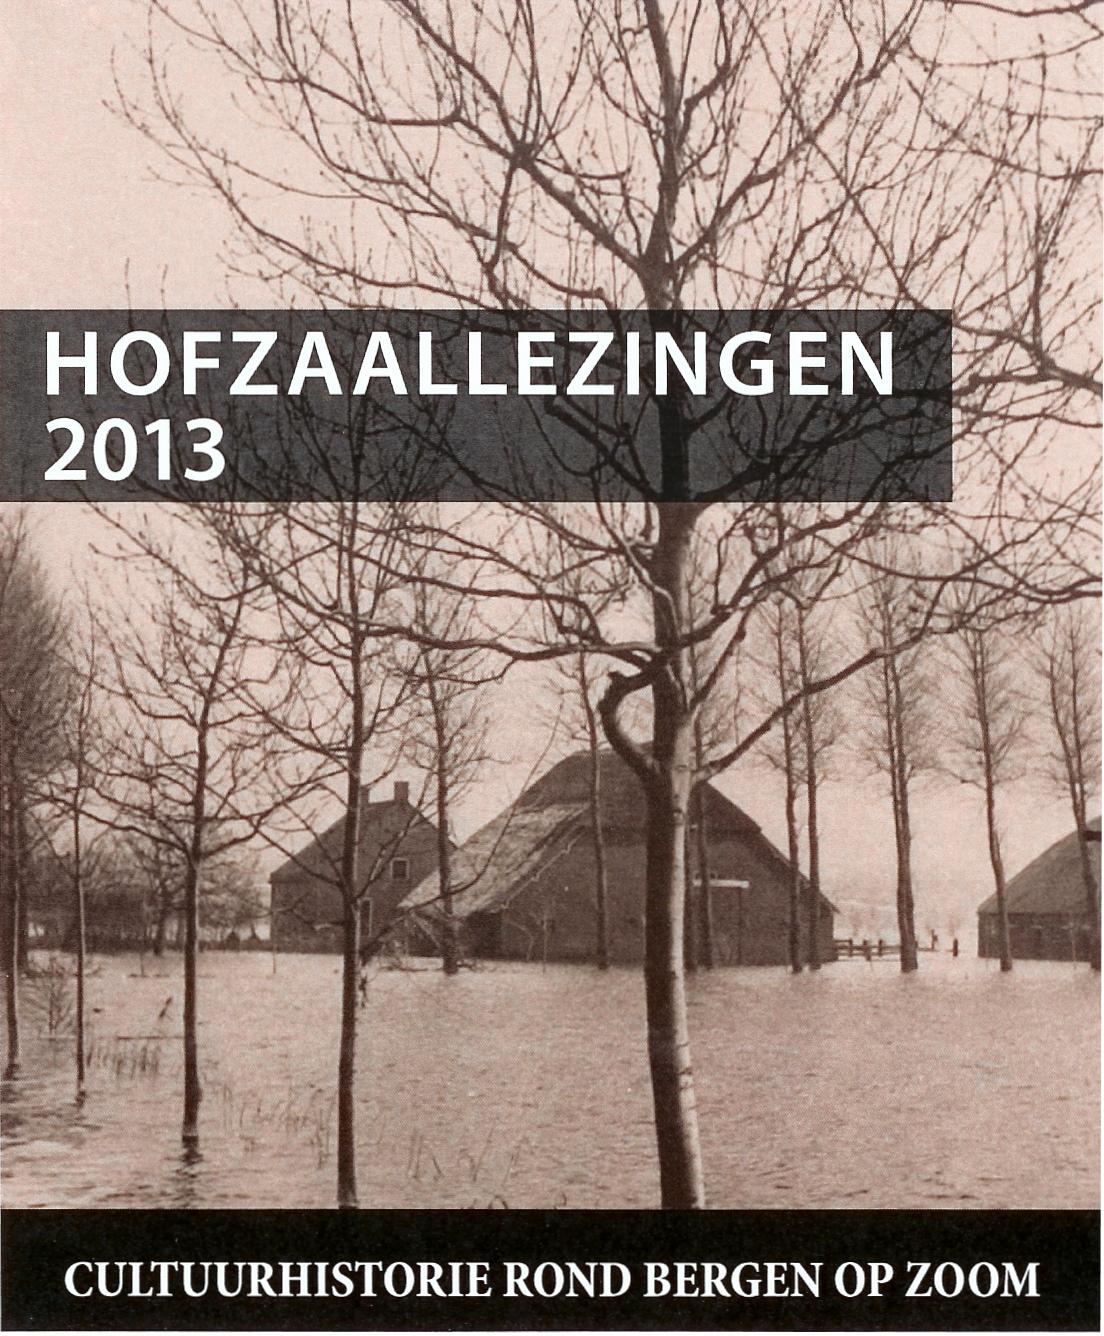 Hofzaallezingen 2013